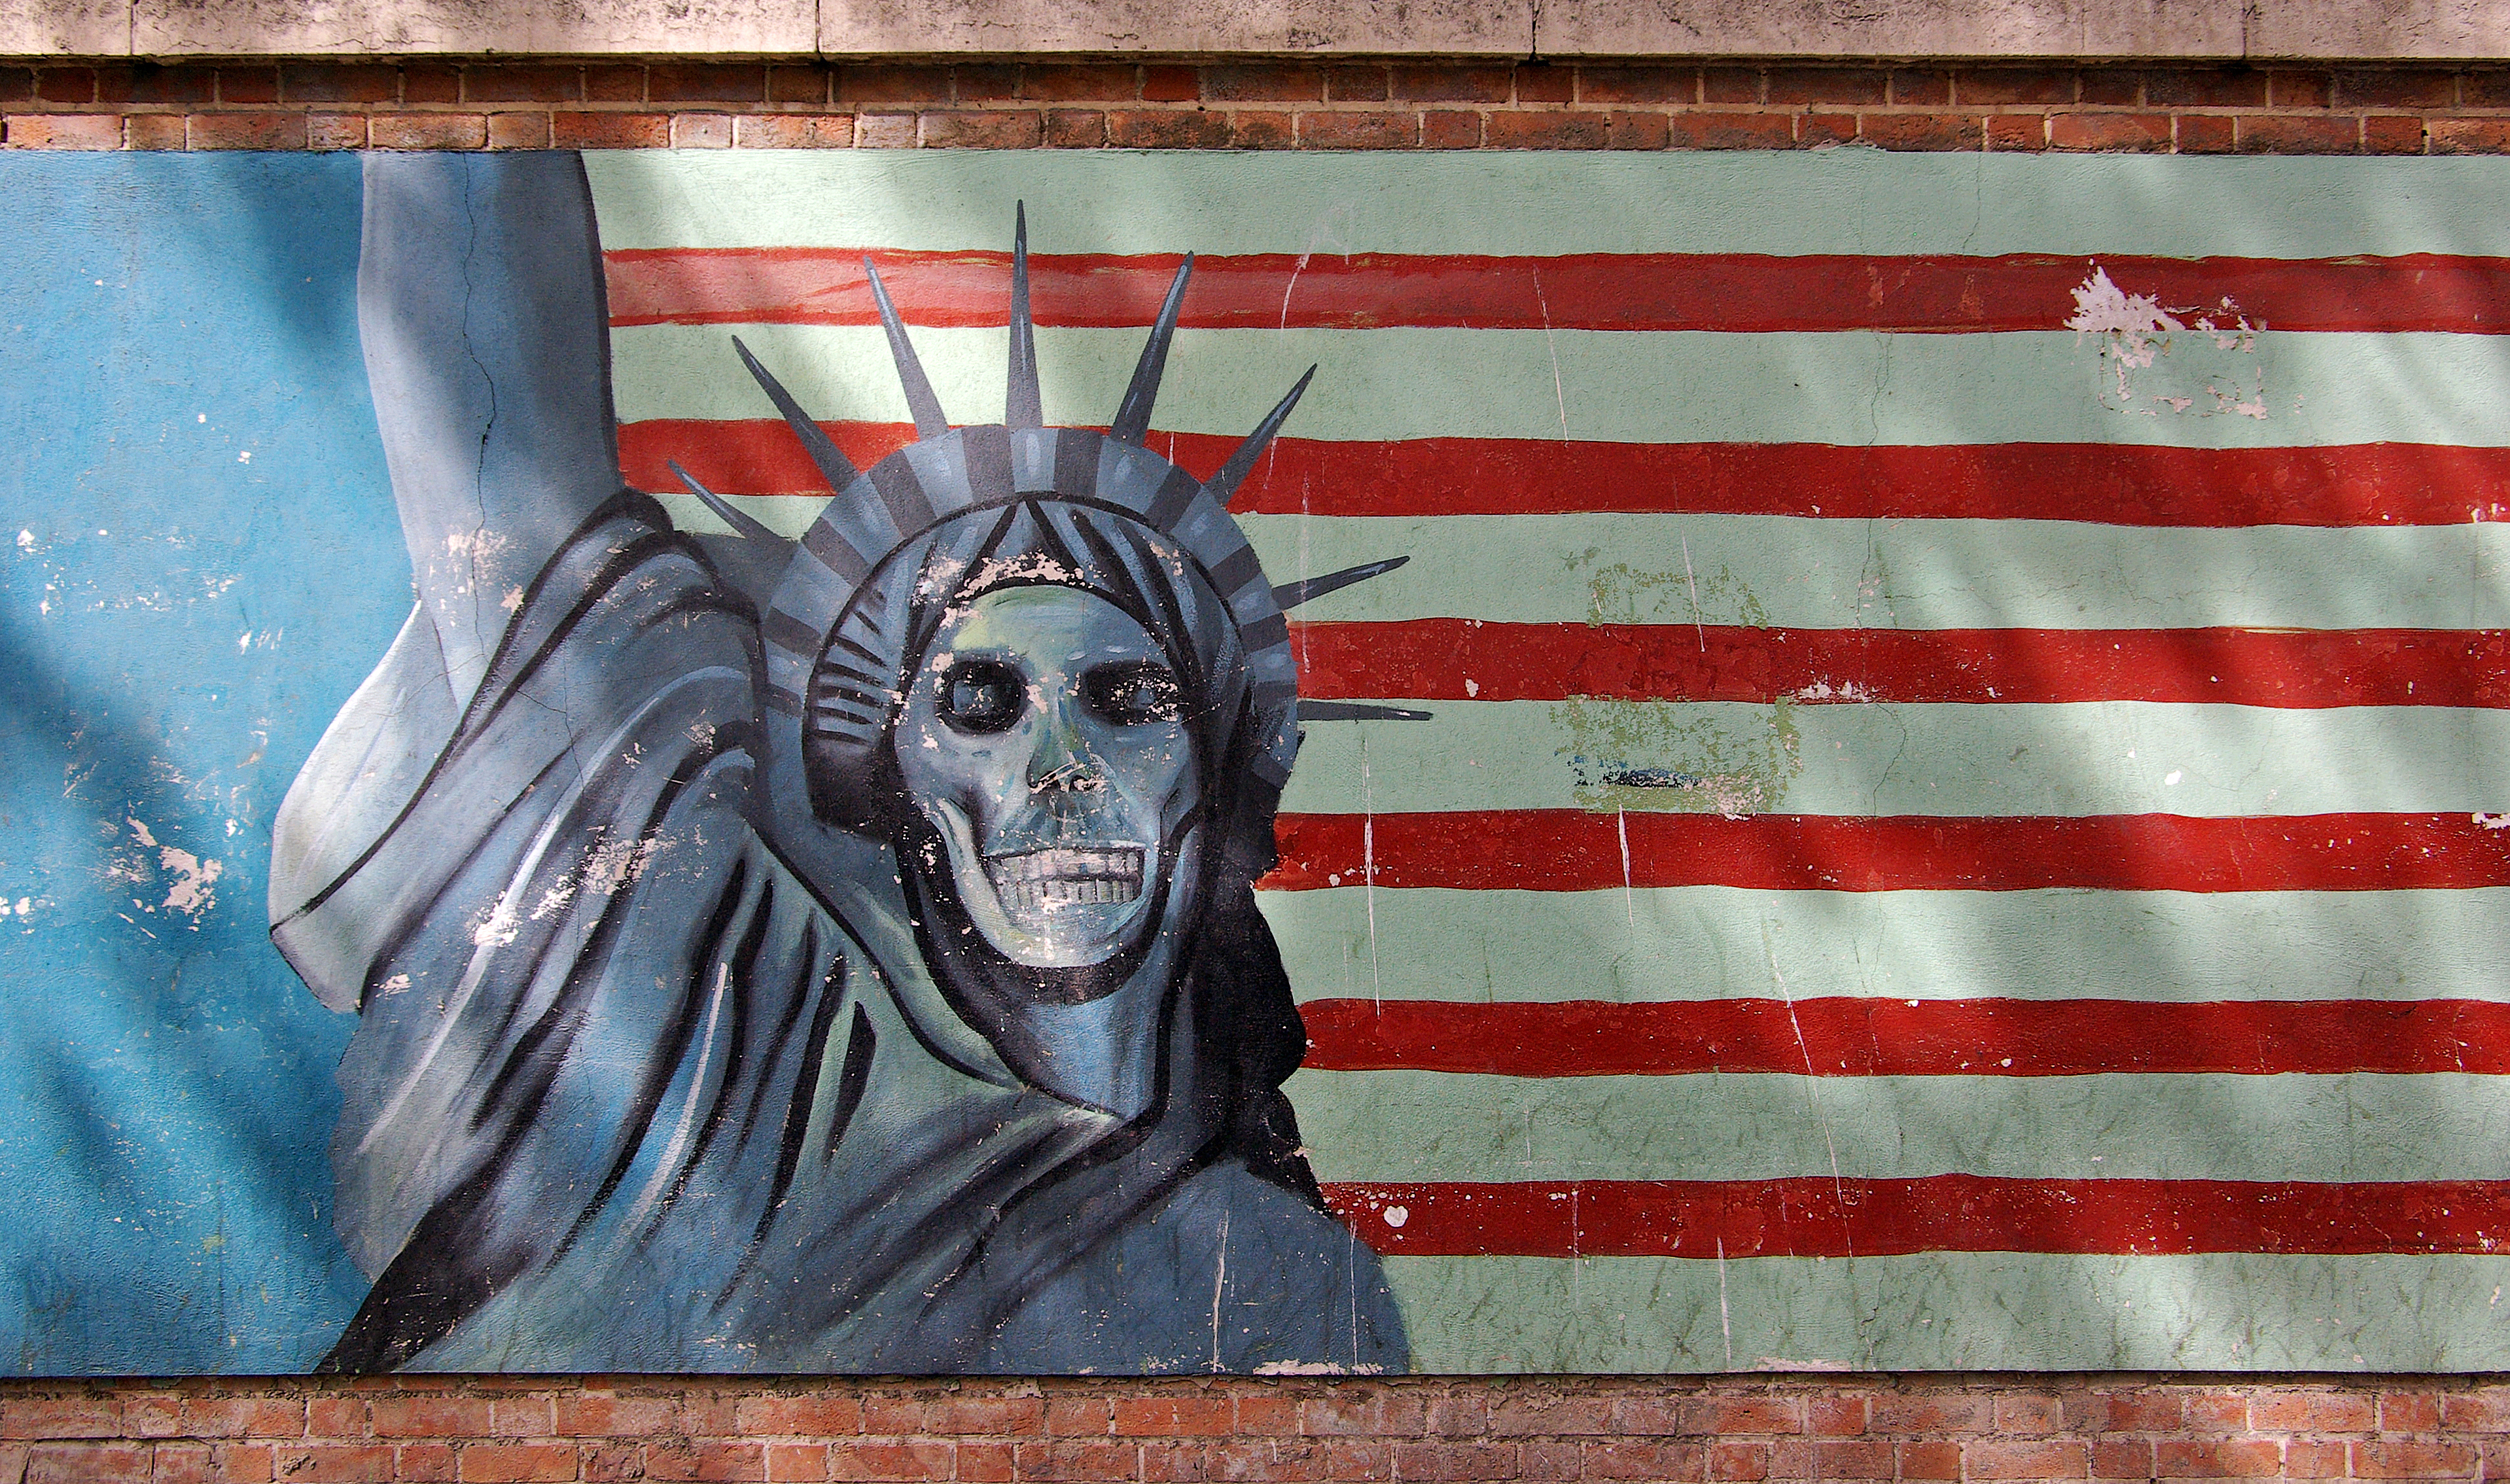 Teheran_US_embassy_propaganda_statue_of_liberty